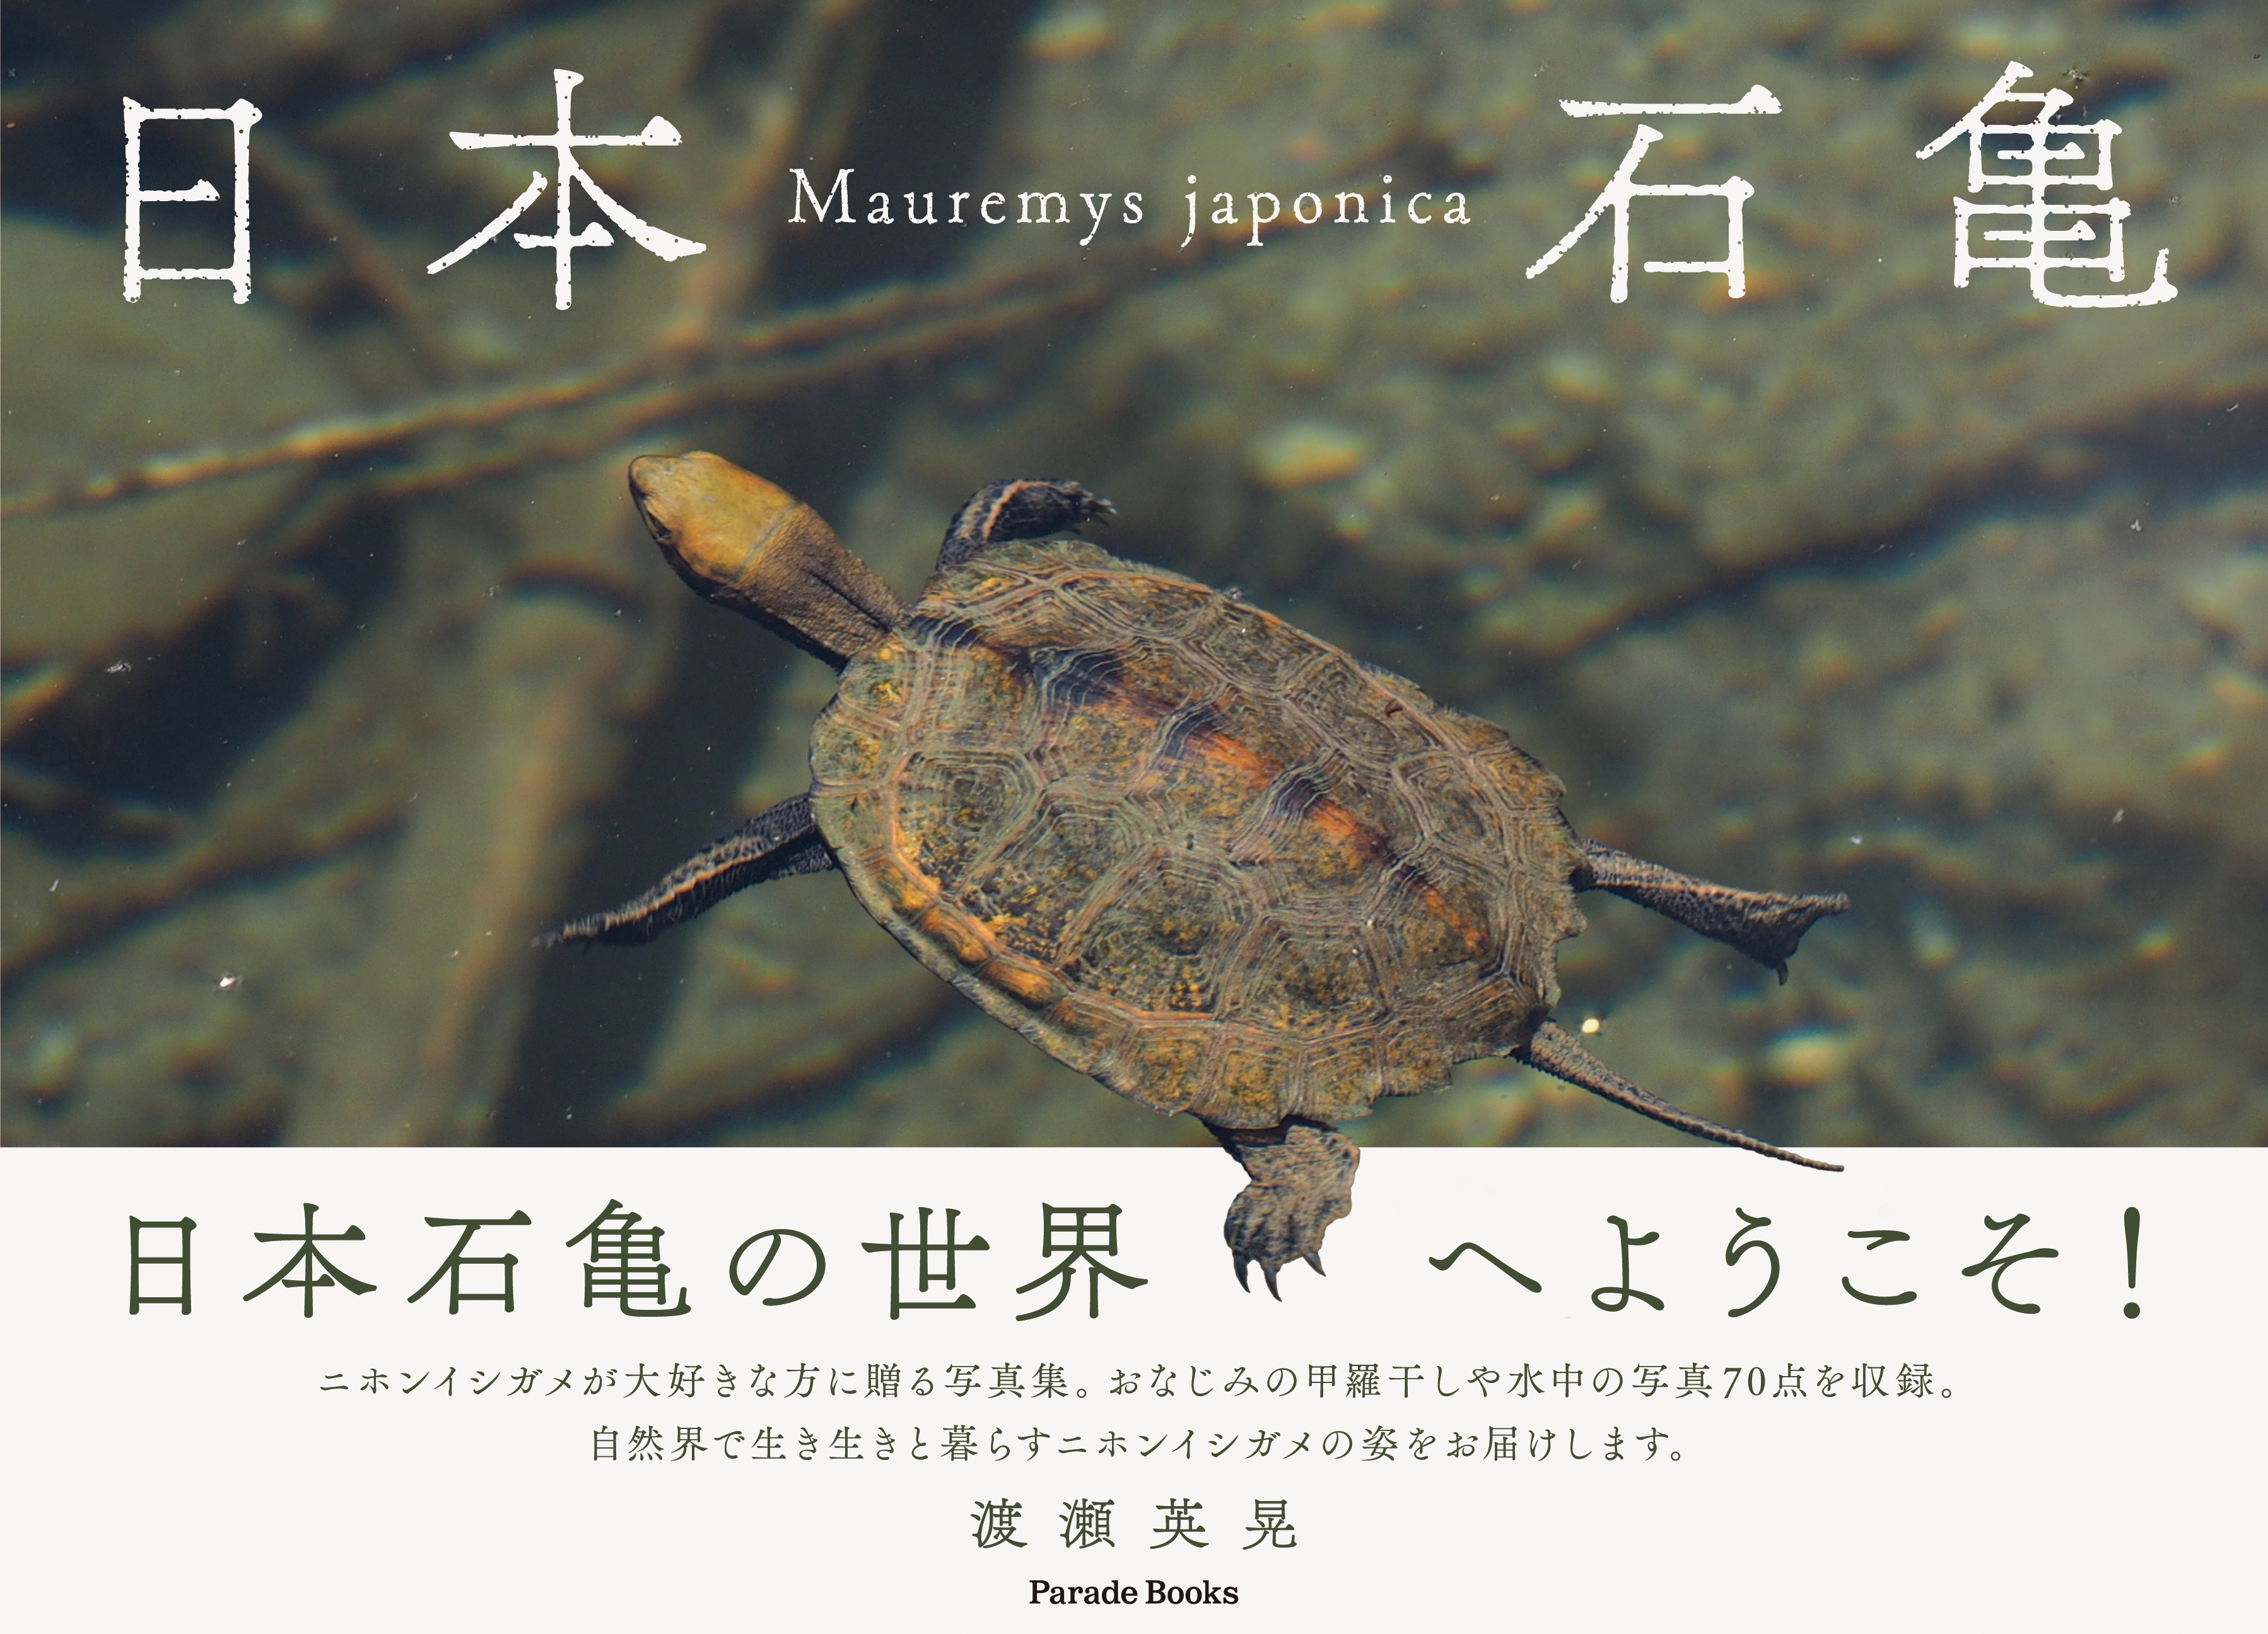 自然界で生き生きと暮らすニホンイシガメの姿を捉えた写真集 日本石亀 が発売 株式会社パレードのプレスリリース